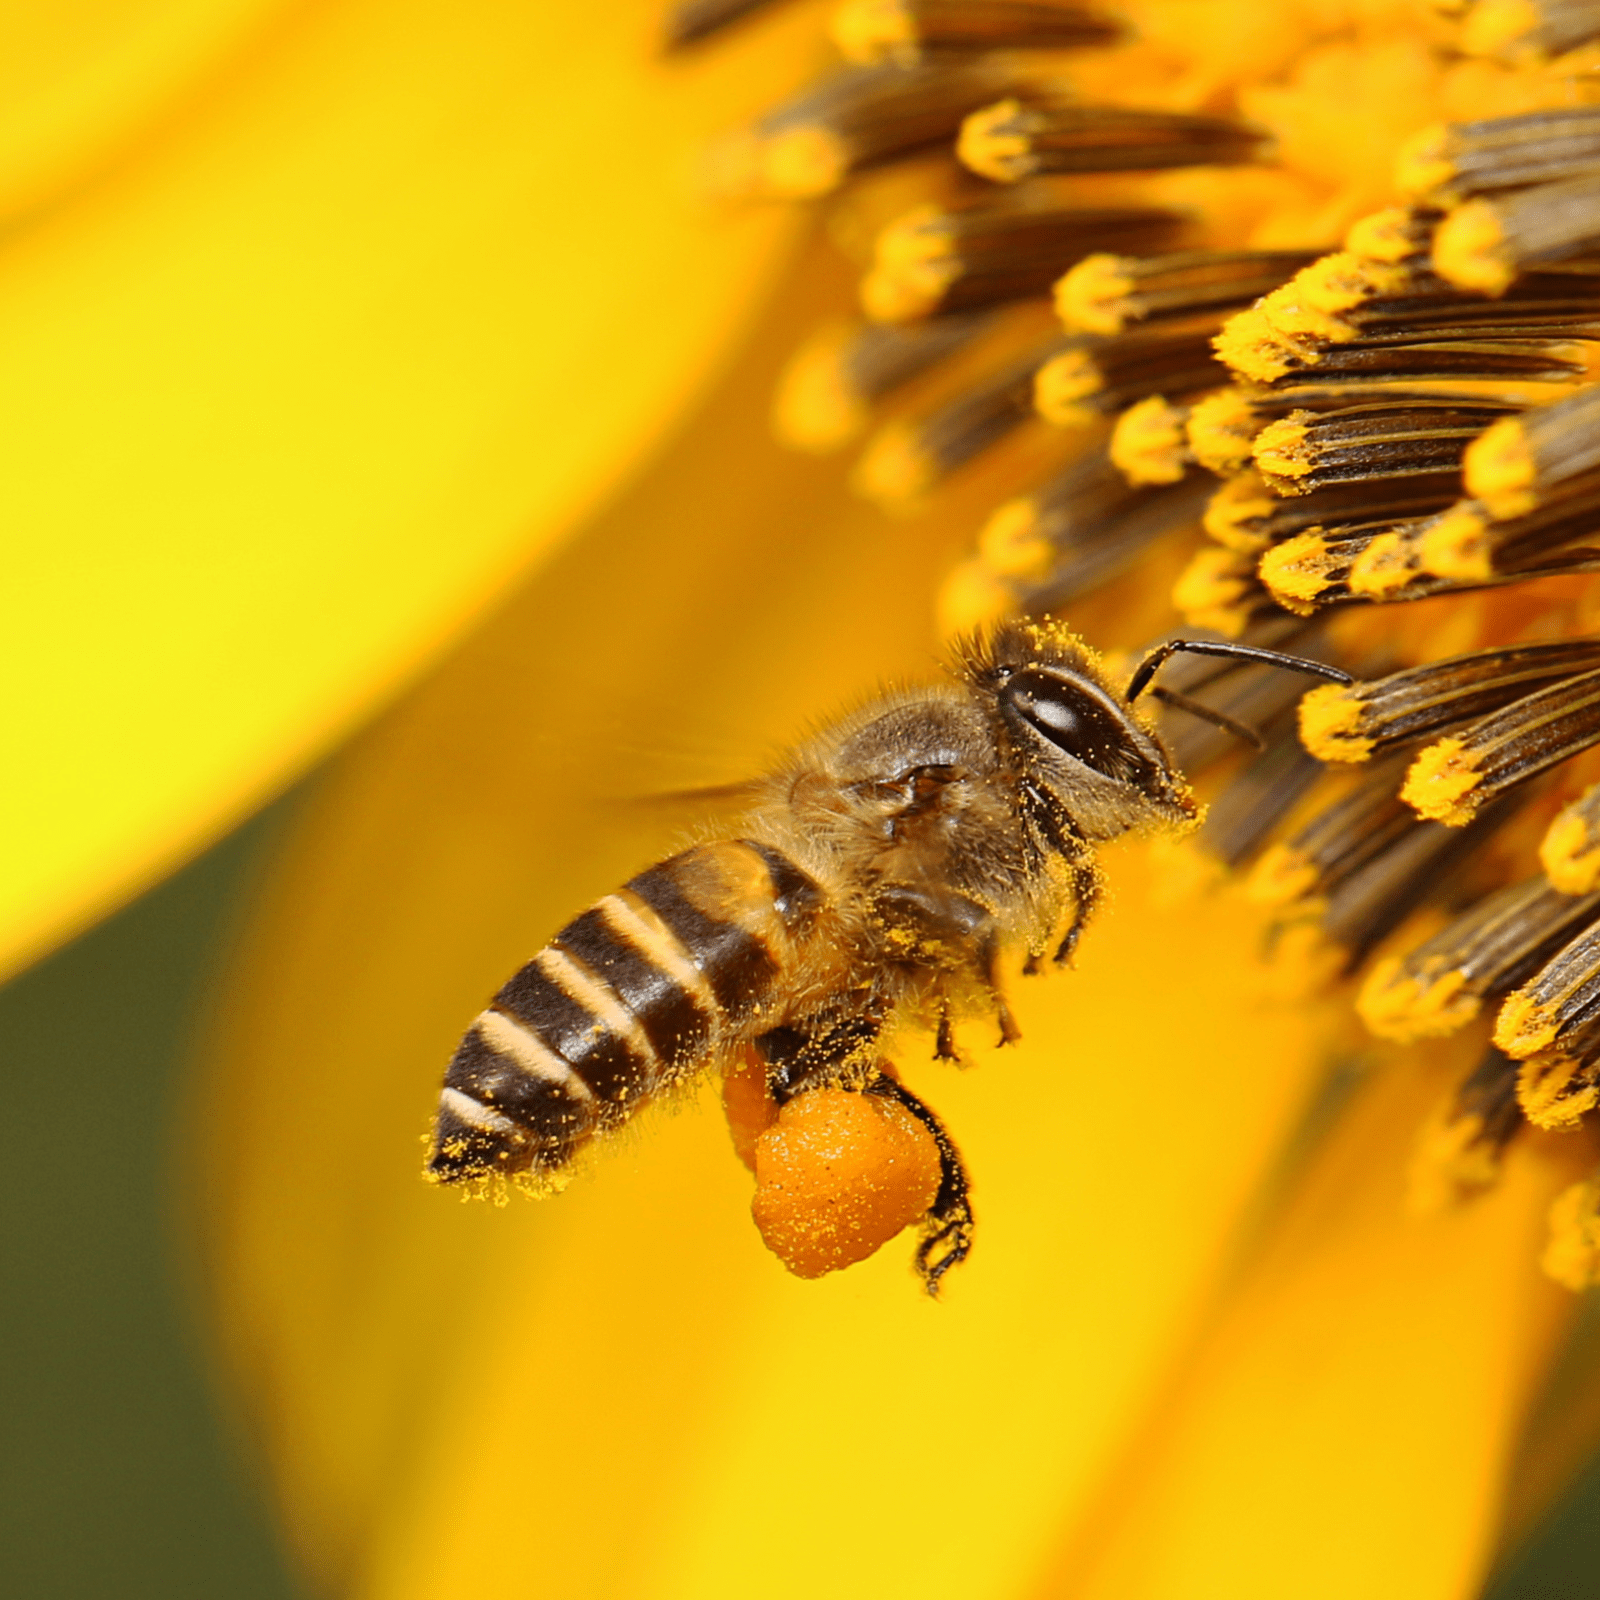 Polen de abeja, El superalimento considerado como una 'bomba' antioxidante  que cuida la piel y aporta energía